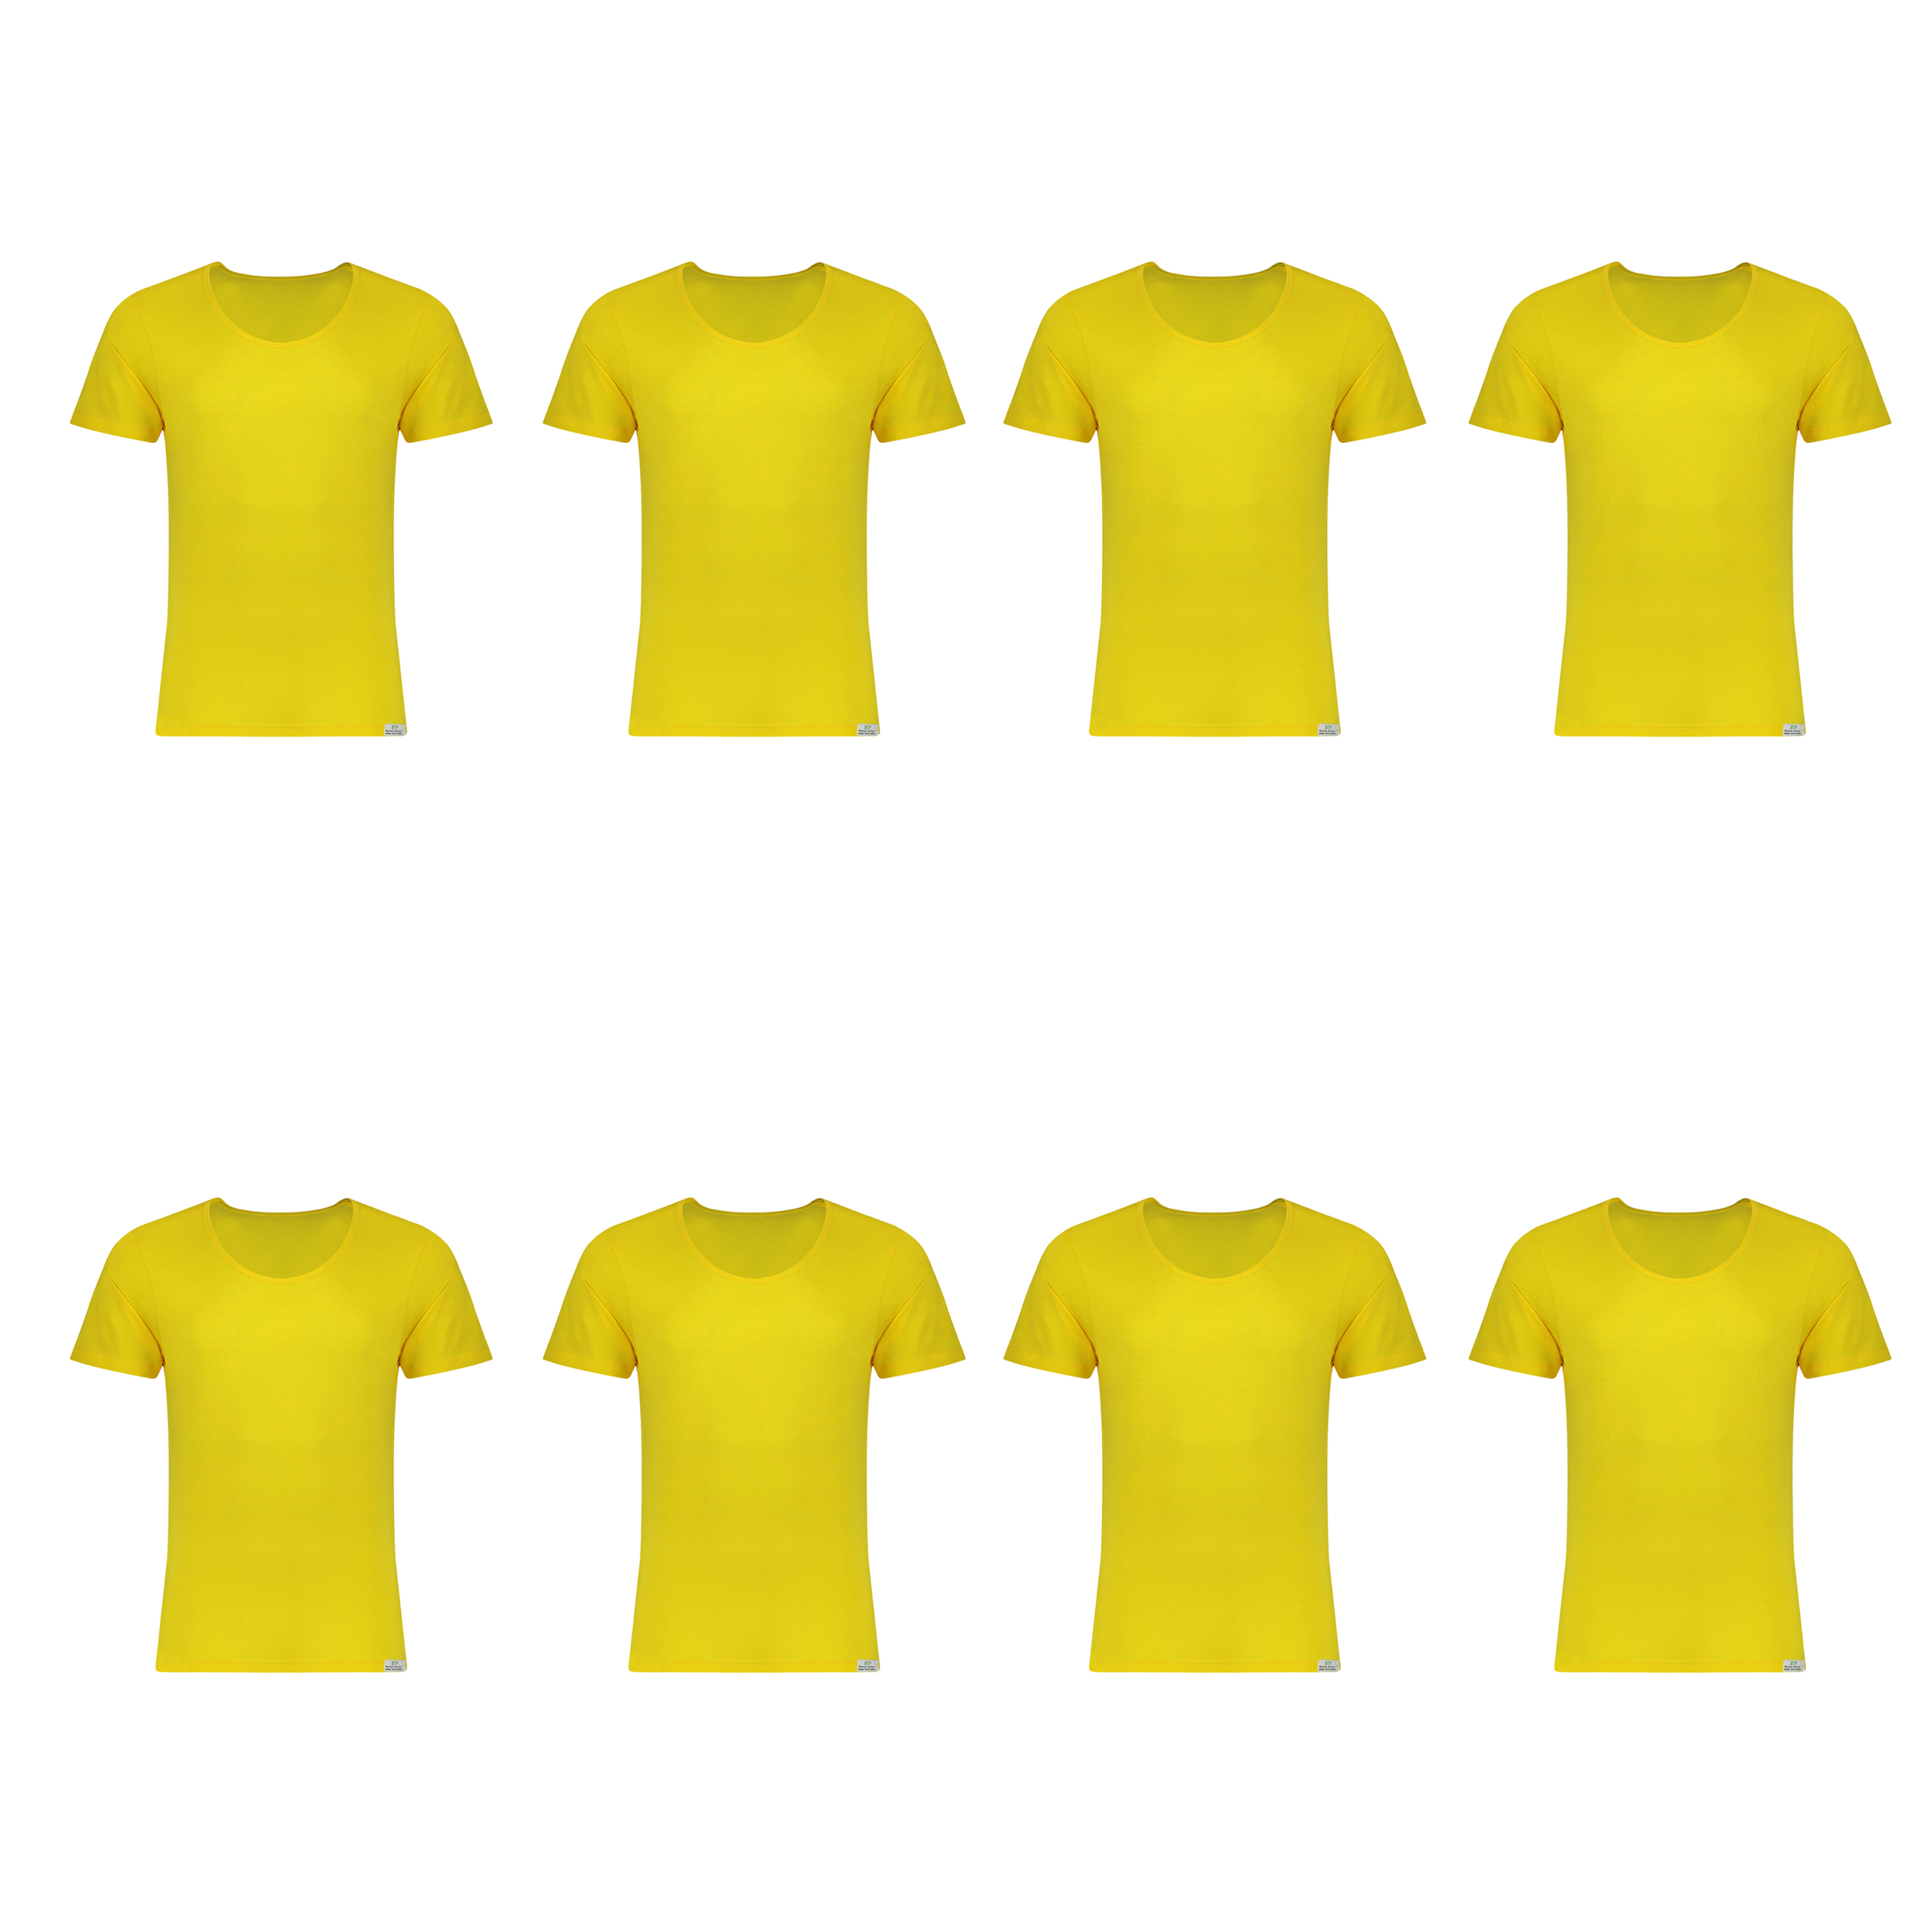 زیرپوش پسرانه برهان تن پوش مدل 5-02  رنگ زرد بسته 8 عددی